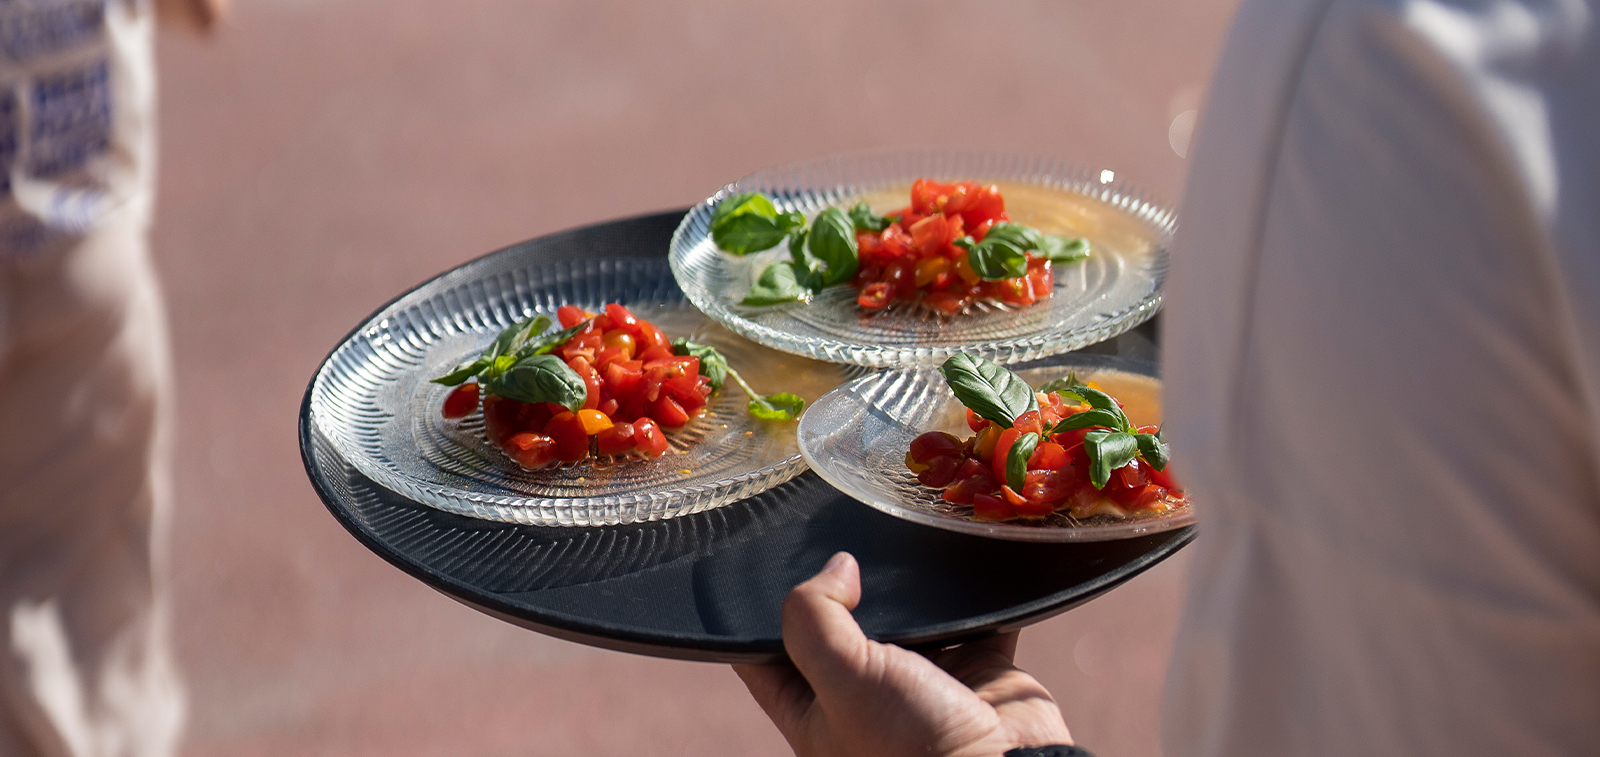 Novos tipos de eventos gastronômicos experimentais estão sendo testados em Turku durante o verão – seis tipos completamente novos de testes de experiência alimentar